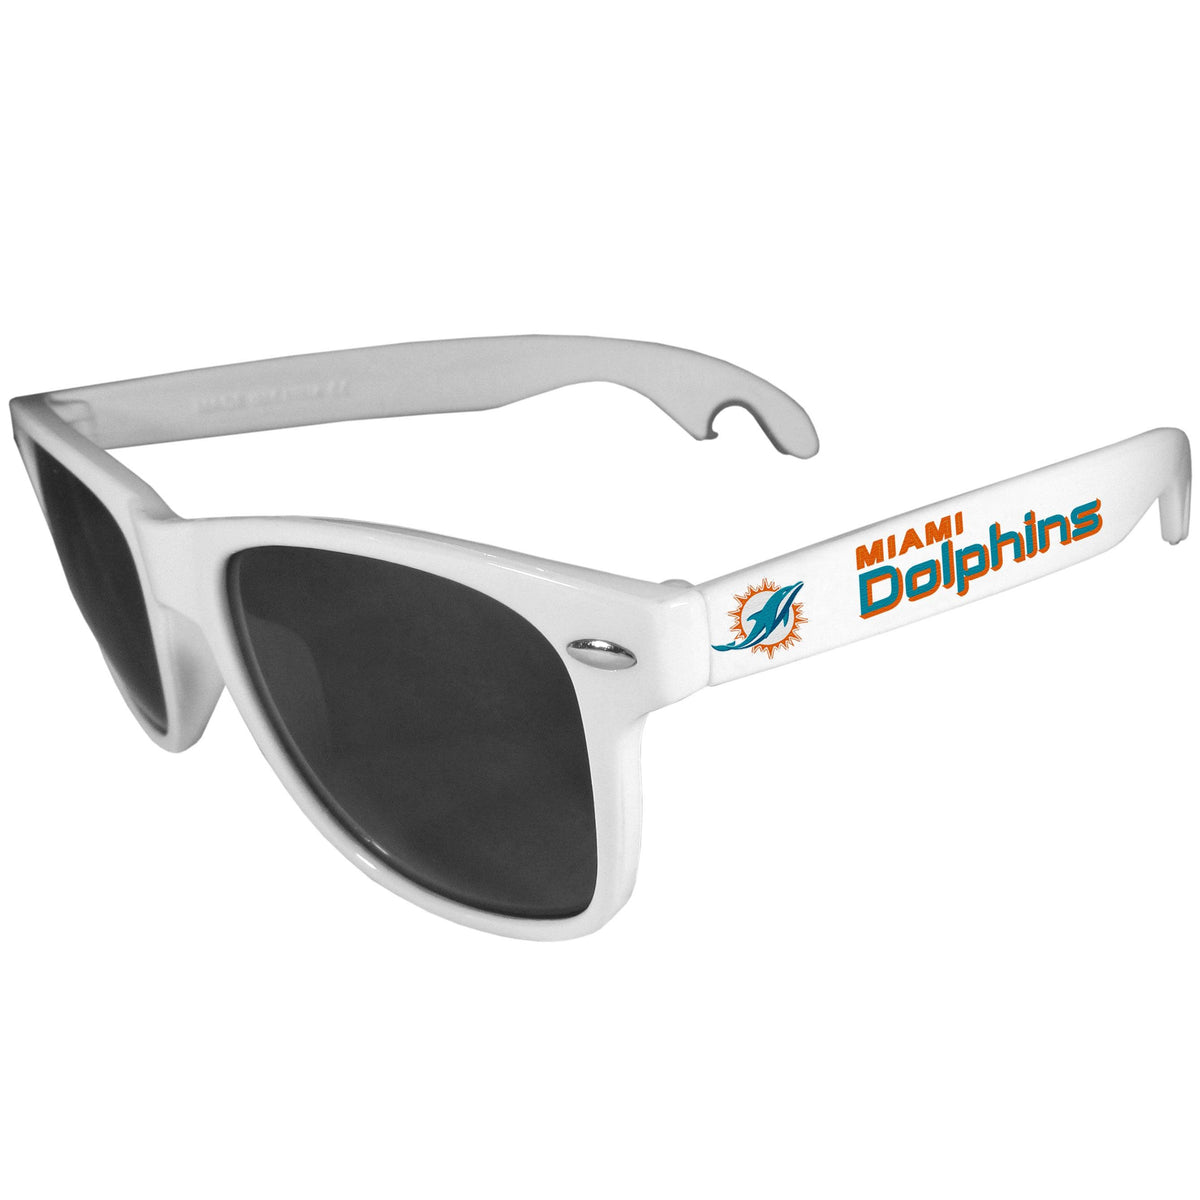 Miami Dolphins Beachfarer Bottle Opener Sunglasses, White - Flyclothing LLC